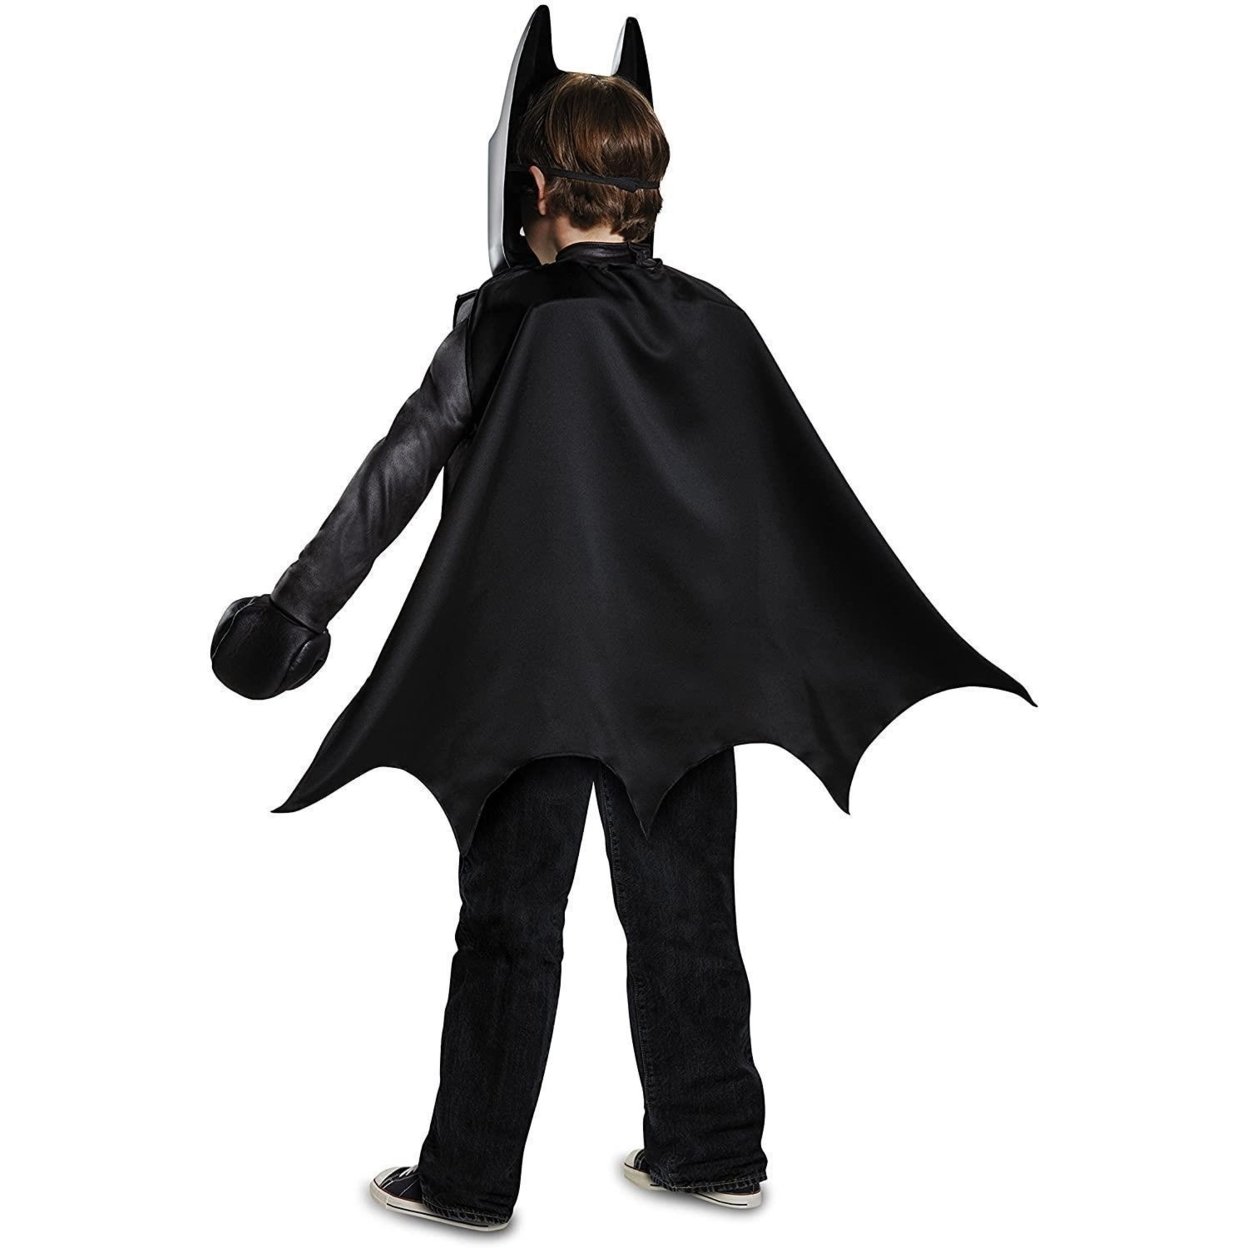 Batman Lego Movie Classic Boys Size S 4/6 Costume DC Universe Detachable Cape Disguise